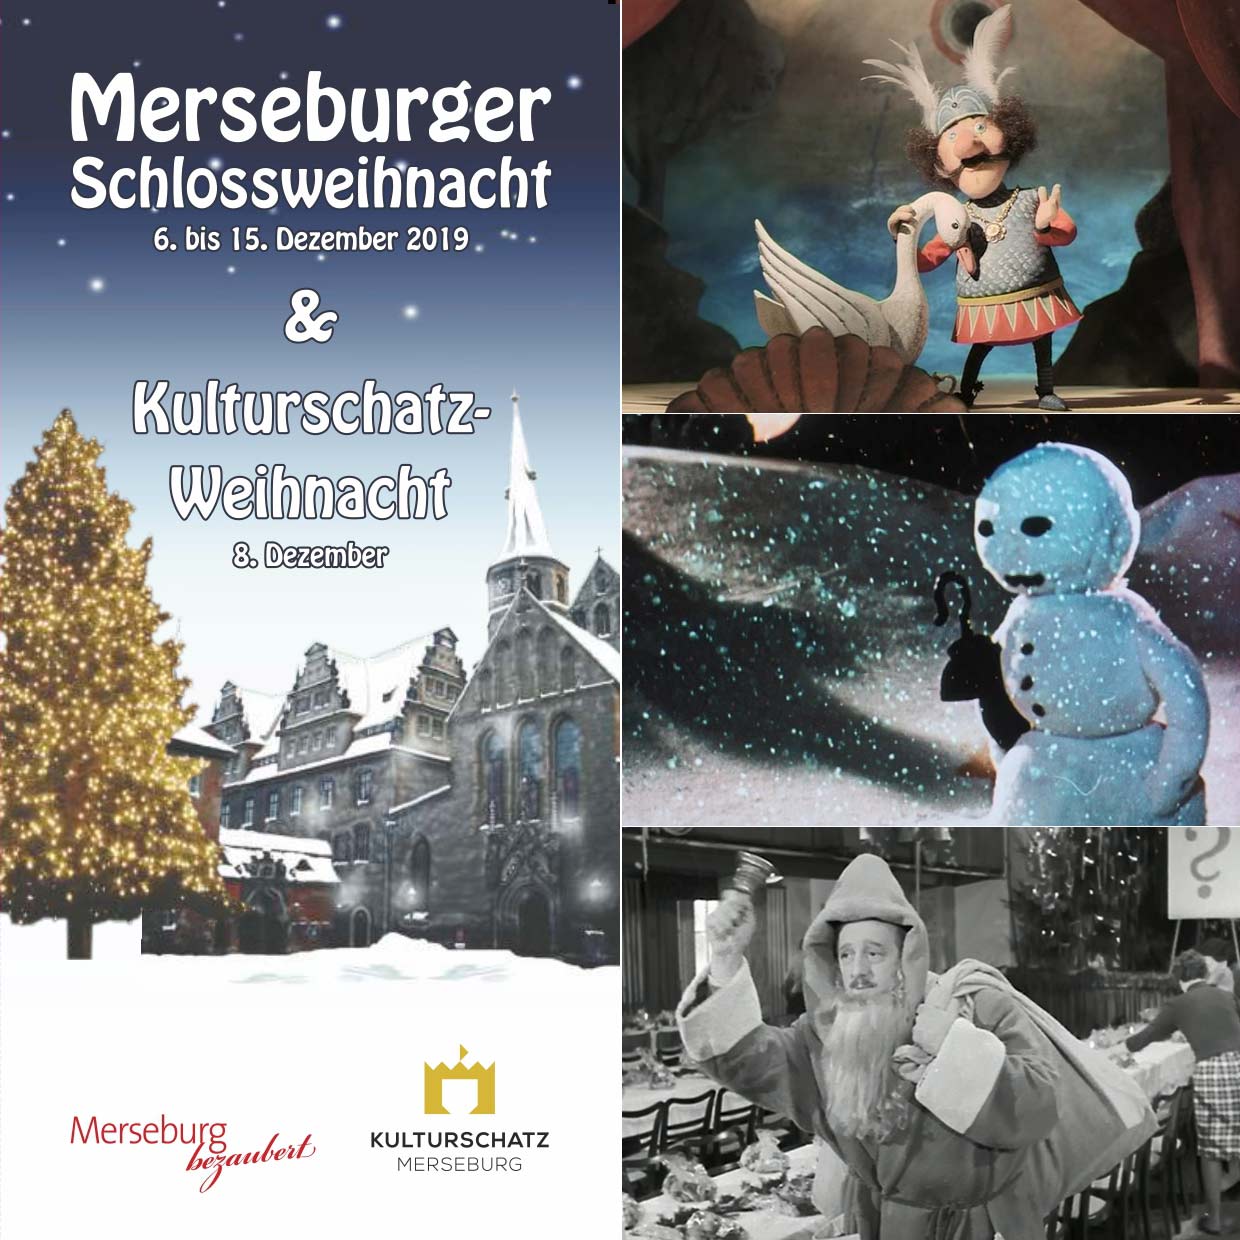 DEFA-Filme zur Kulturschatz-Weihnacht, u.a. 